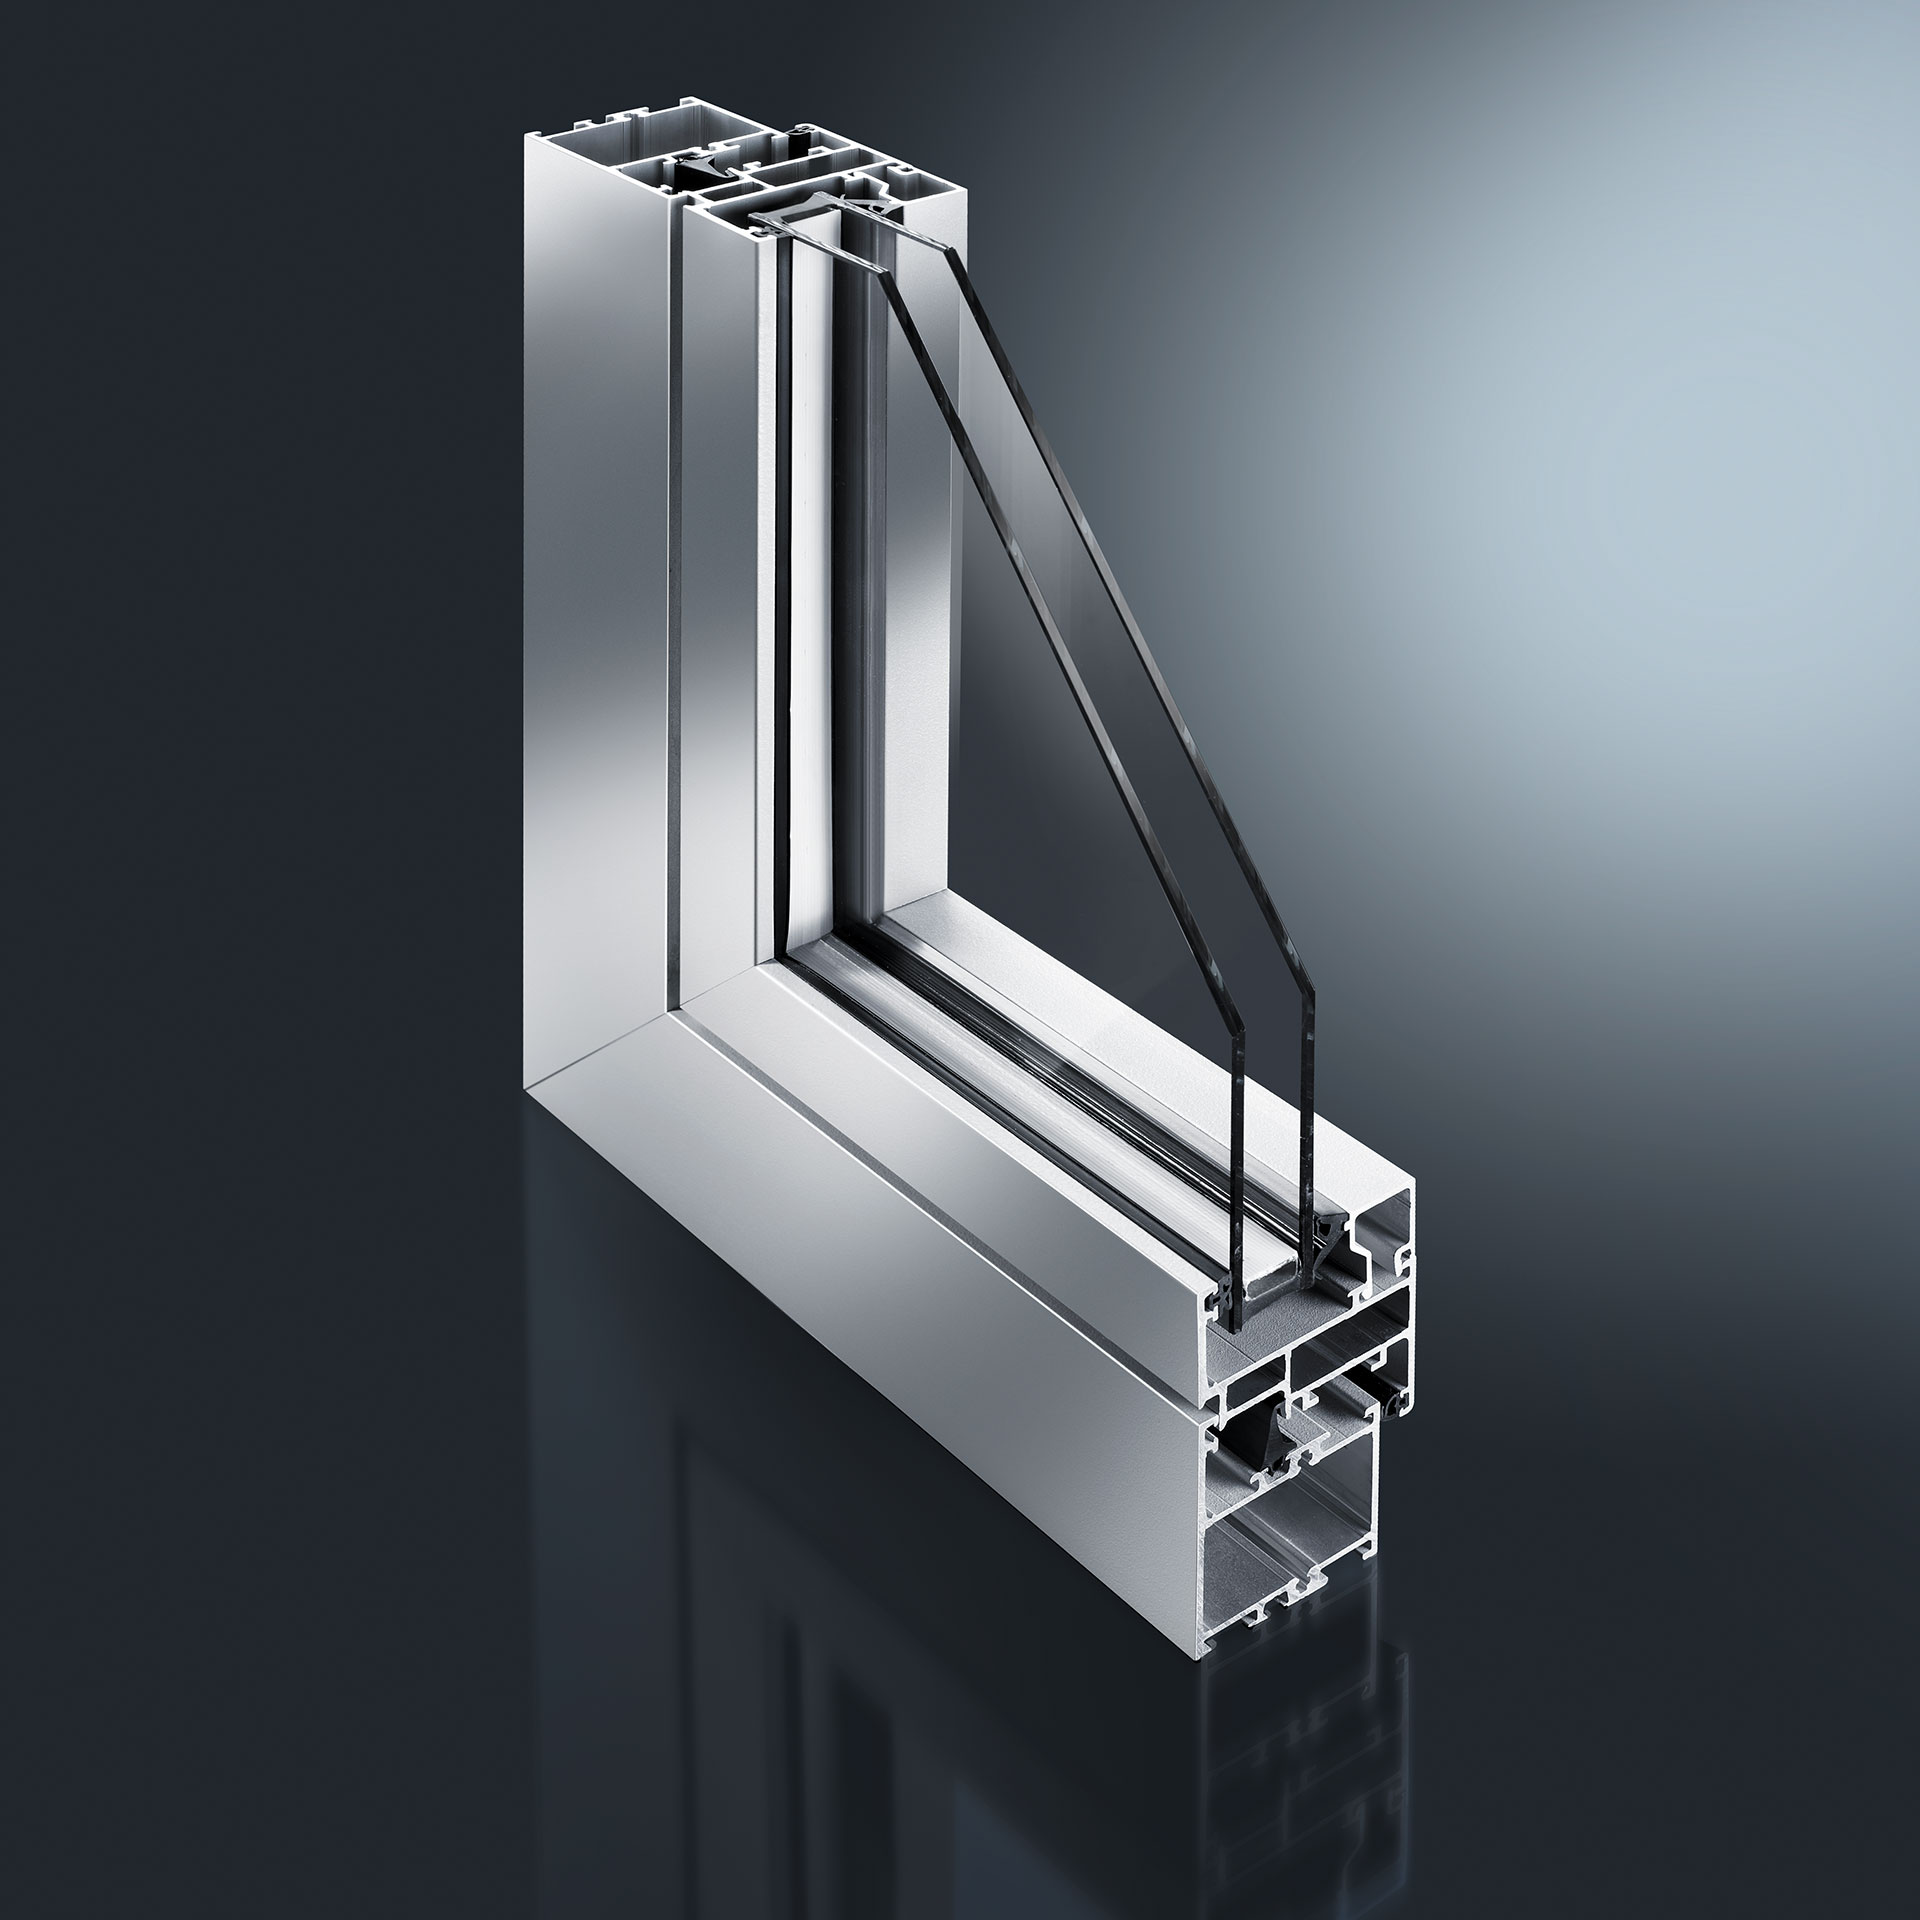 Das GUTMANN GWD 050 n ist ein ungedämmtes Aluminium Fenster- & Tür-System. Es wird vor allem im Innenbereiche von Gebäuden für Trenn- und Wandelemente genutzt.